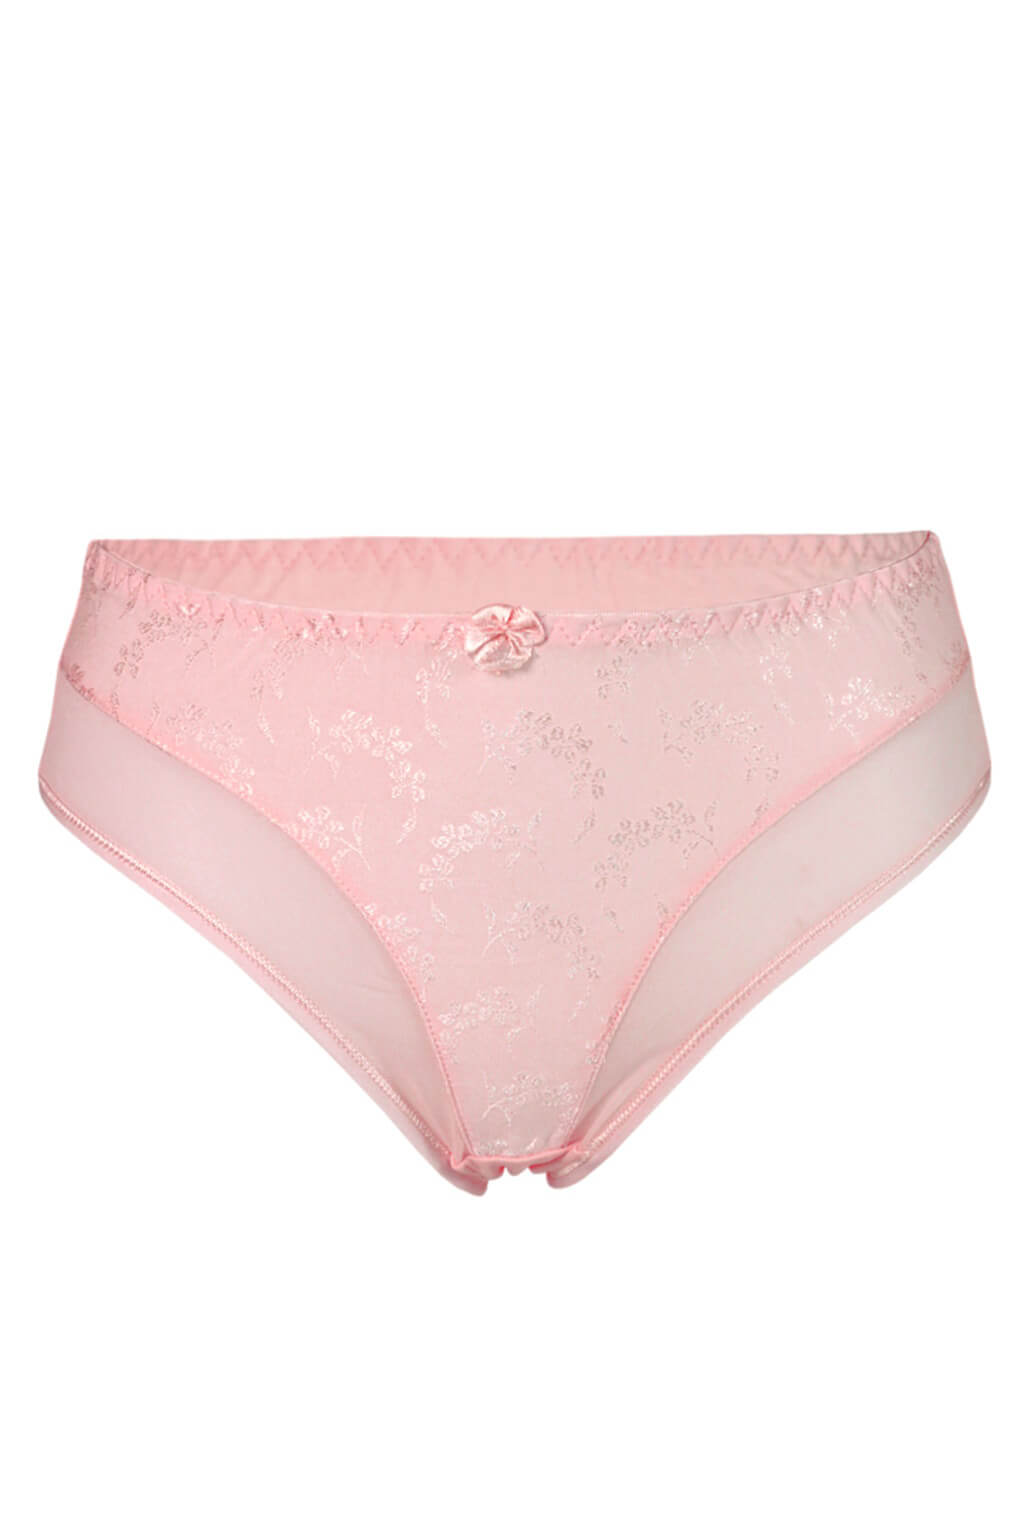 Tiana bavlněné kalhotky XL světle růžová